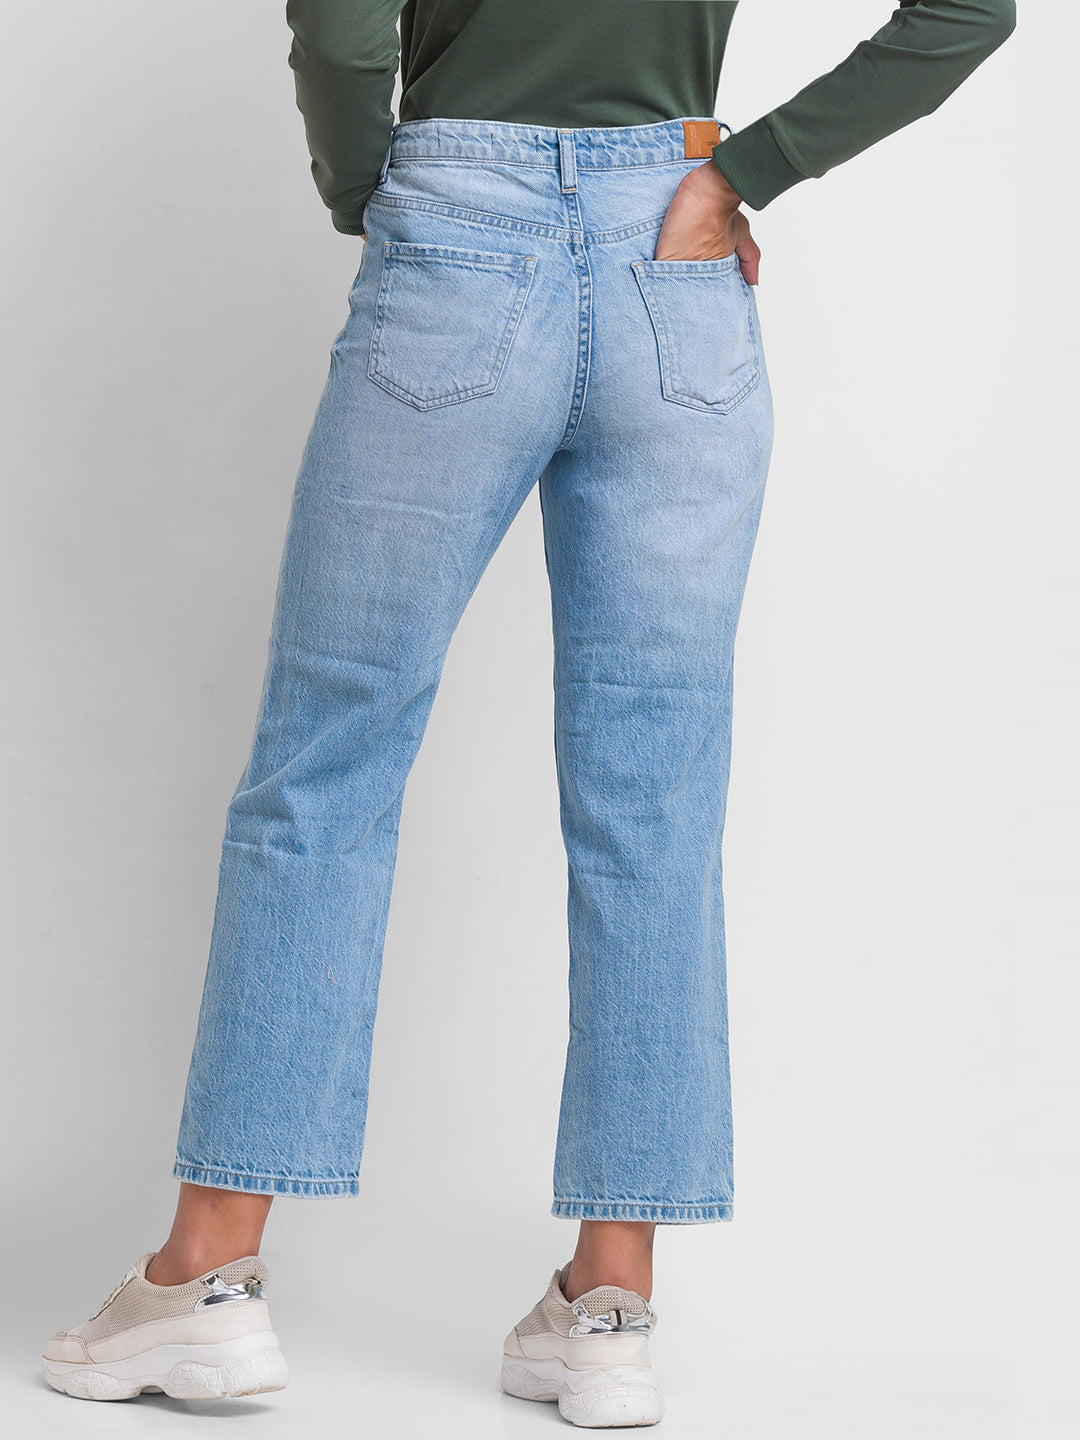 Buy Women's Linen Semi-Formal Wear Straight Fit Pants|Cottonworld